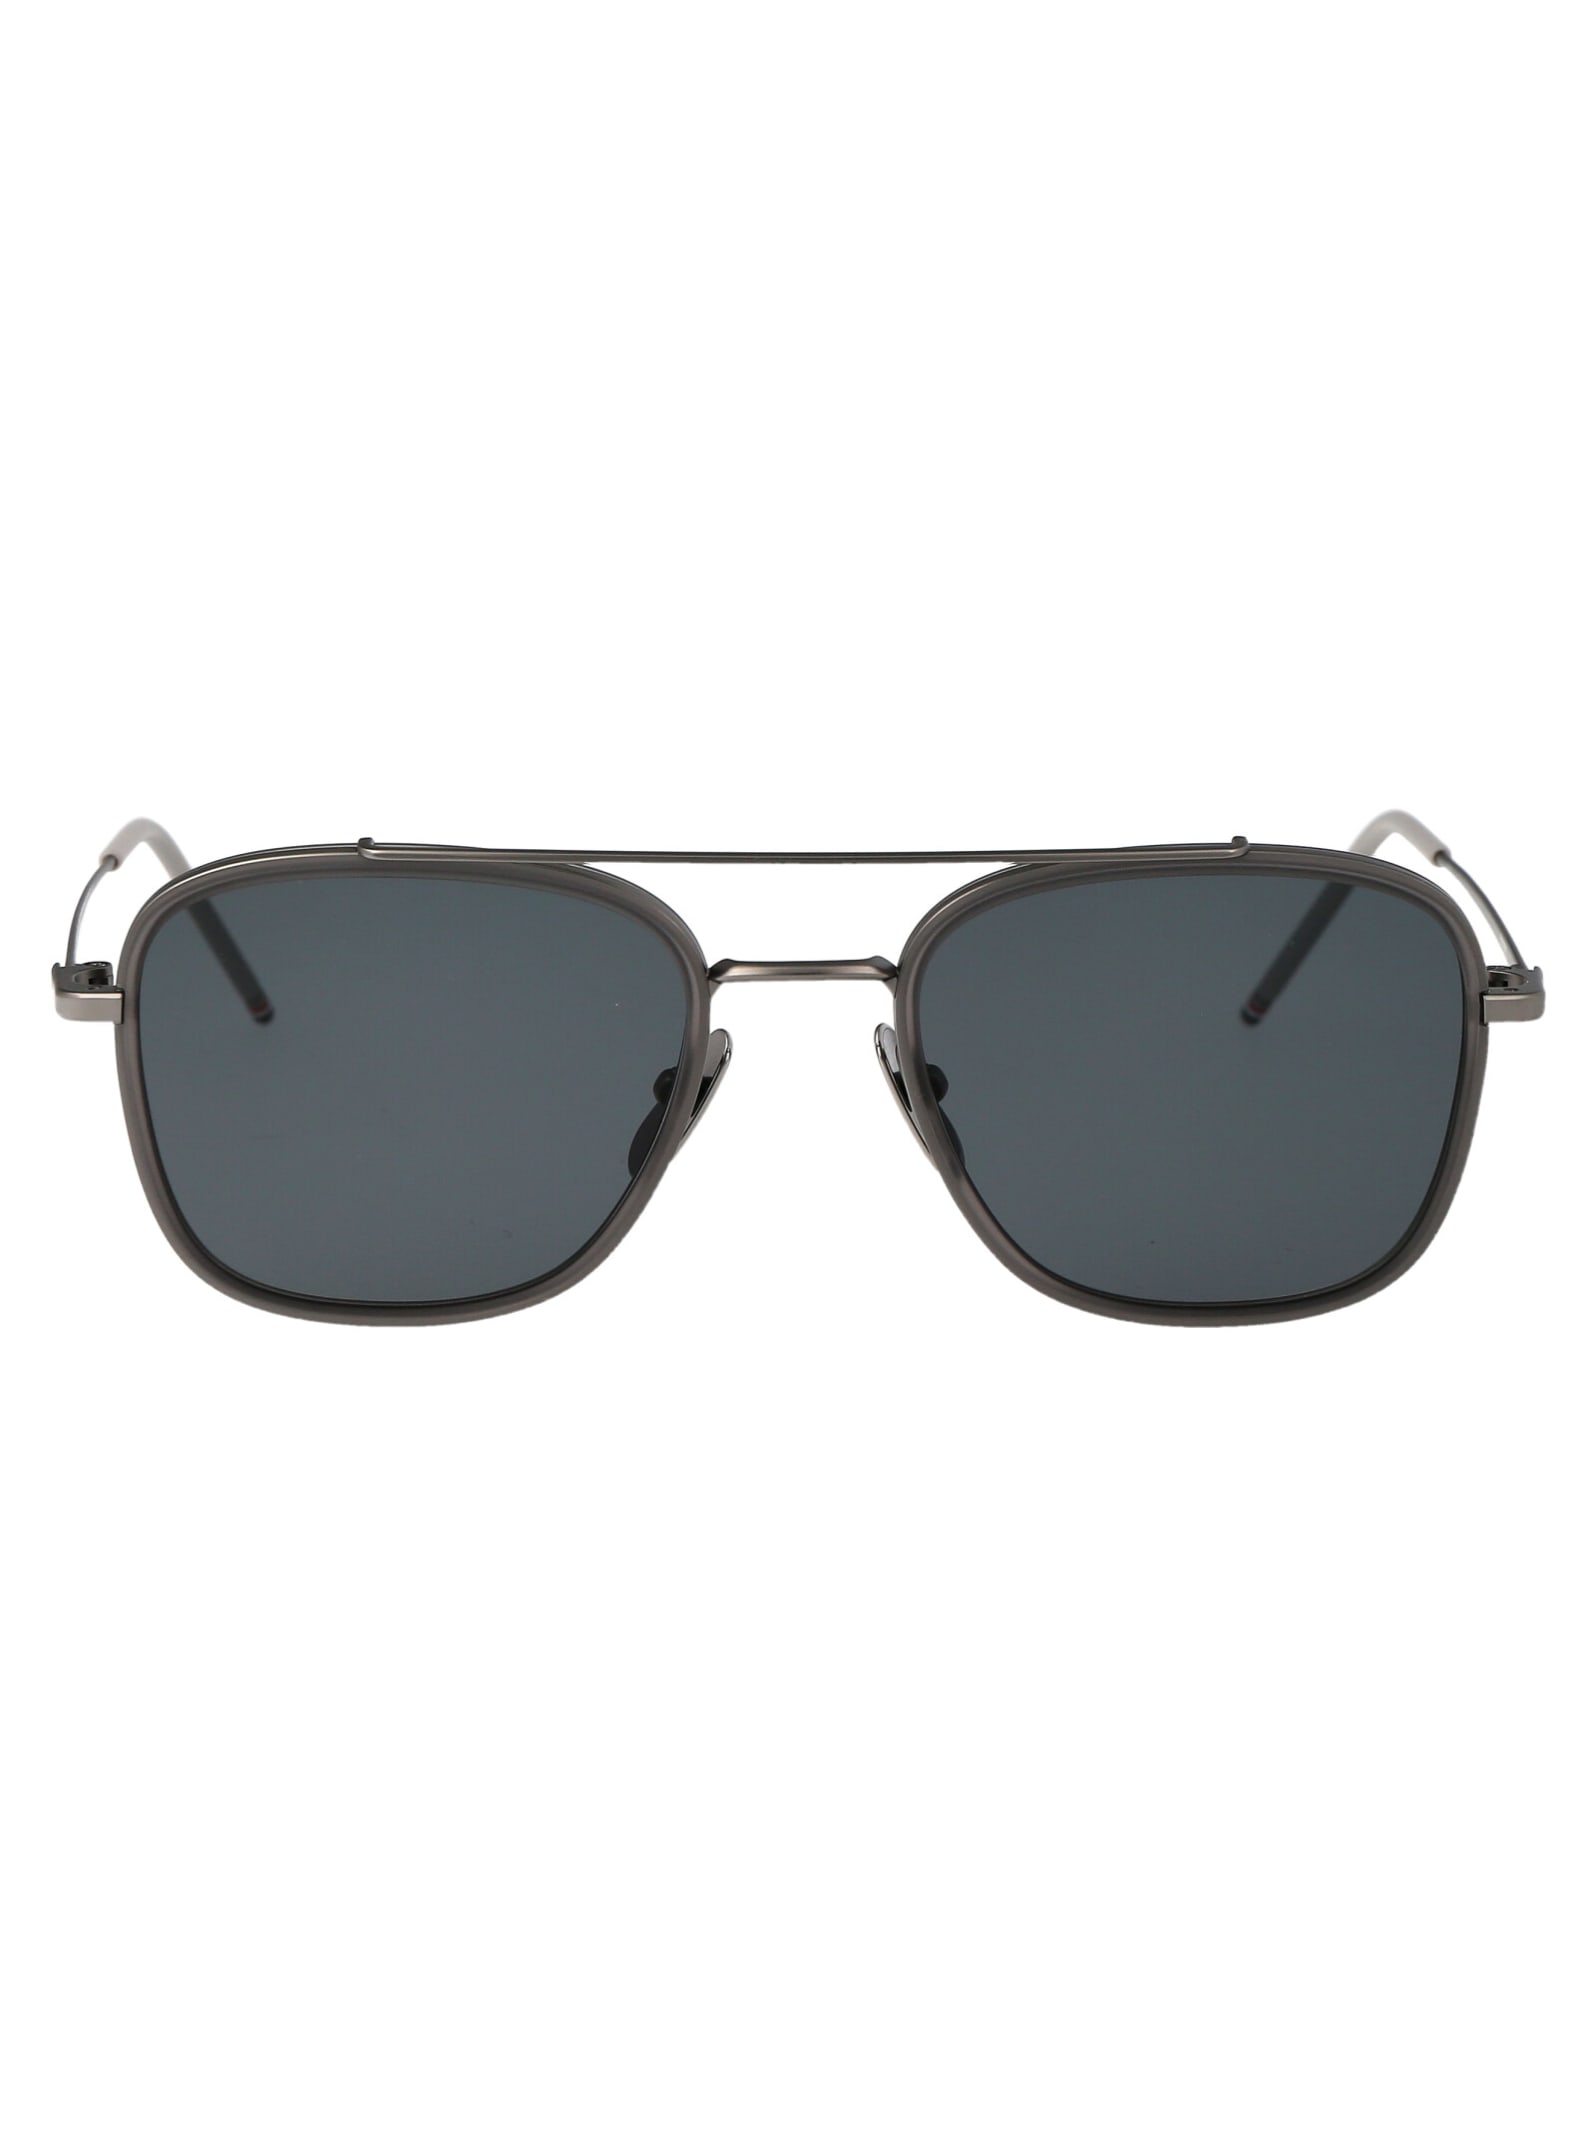 Ues800a-g0003-060-51 Sunglasses